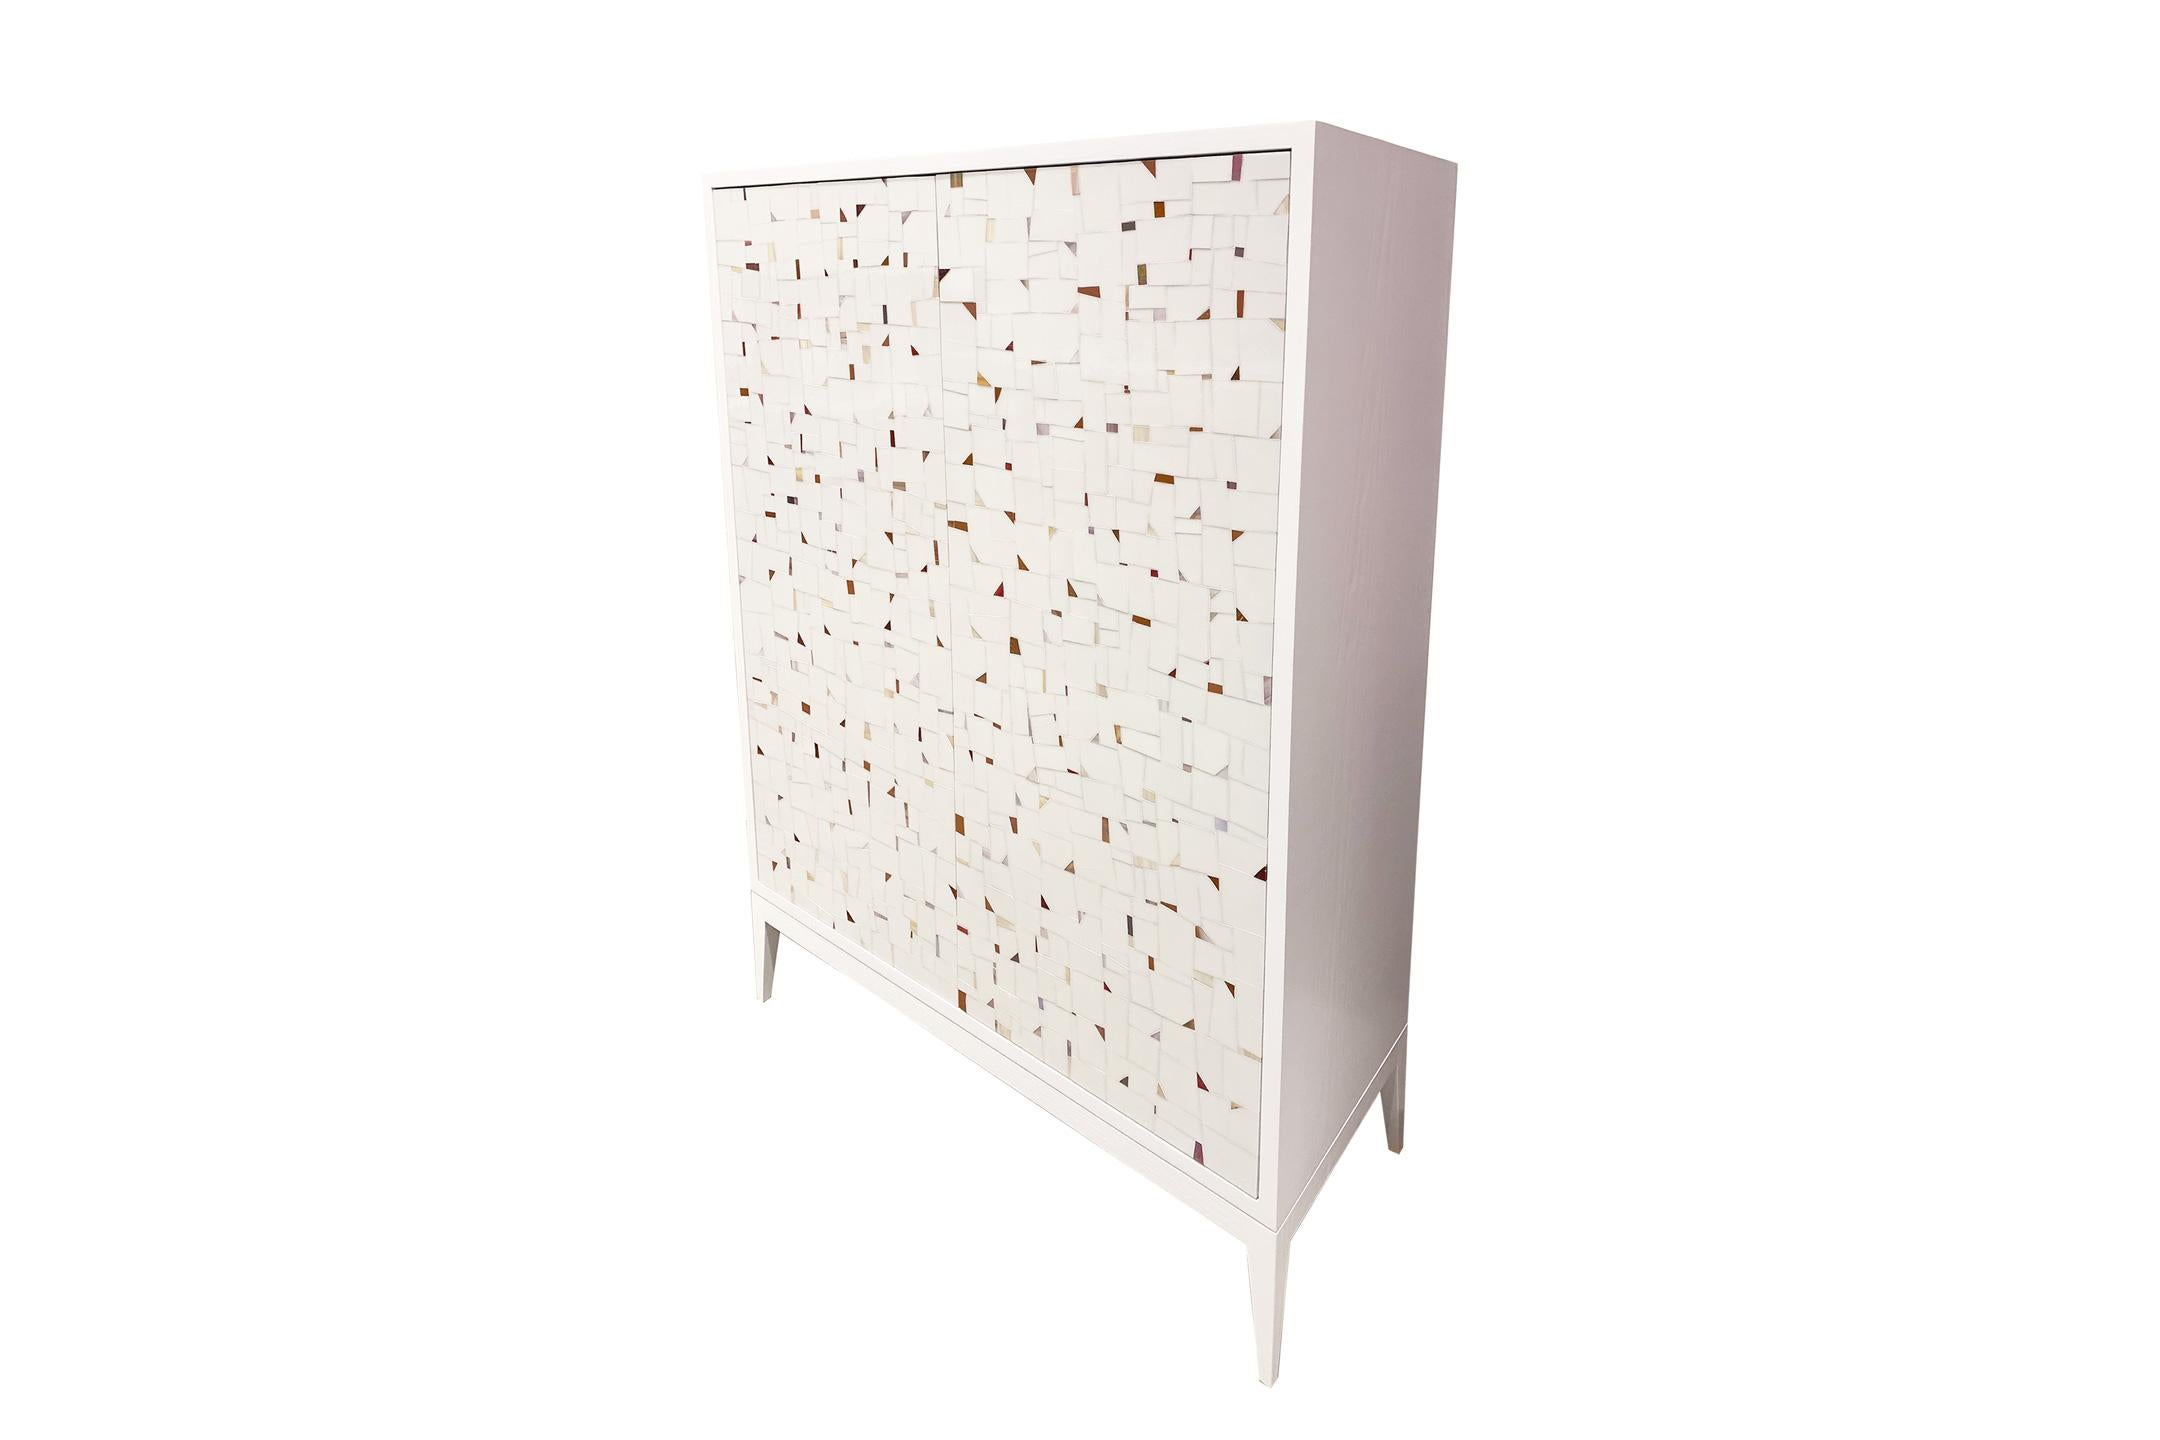 Der Barschrank Milano von Ercole Home hat eine 2-türige Front und ist aus weiß lackiertem Eichenholz. Handgeschliffene Glasmosaike in hellem Elfenbein und weißem Glasmosaik schmücken die Oberfläche in einem durchgehenden